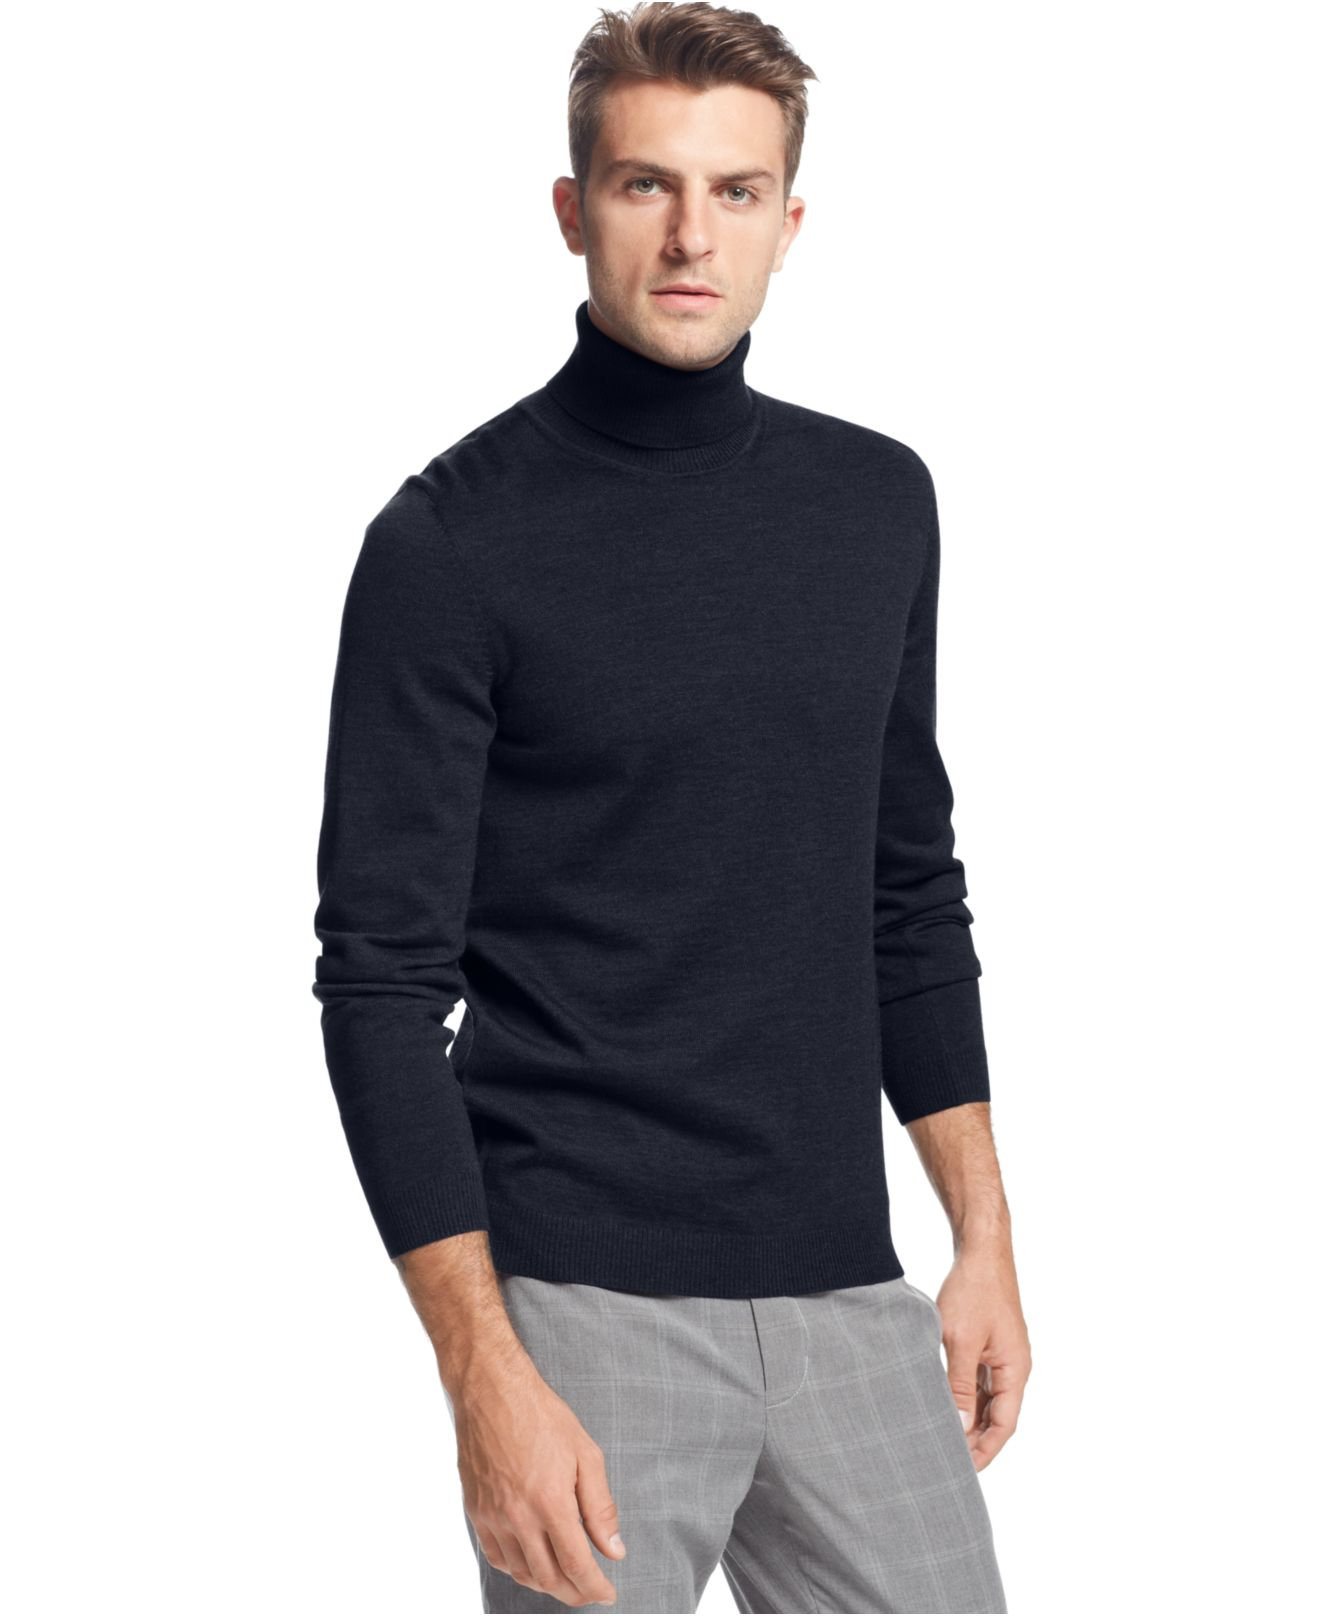 BOSS Boss Merino-wool Turtleneck Sweater in Dark Navy (Blue) for Men - Lyst